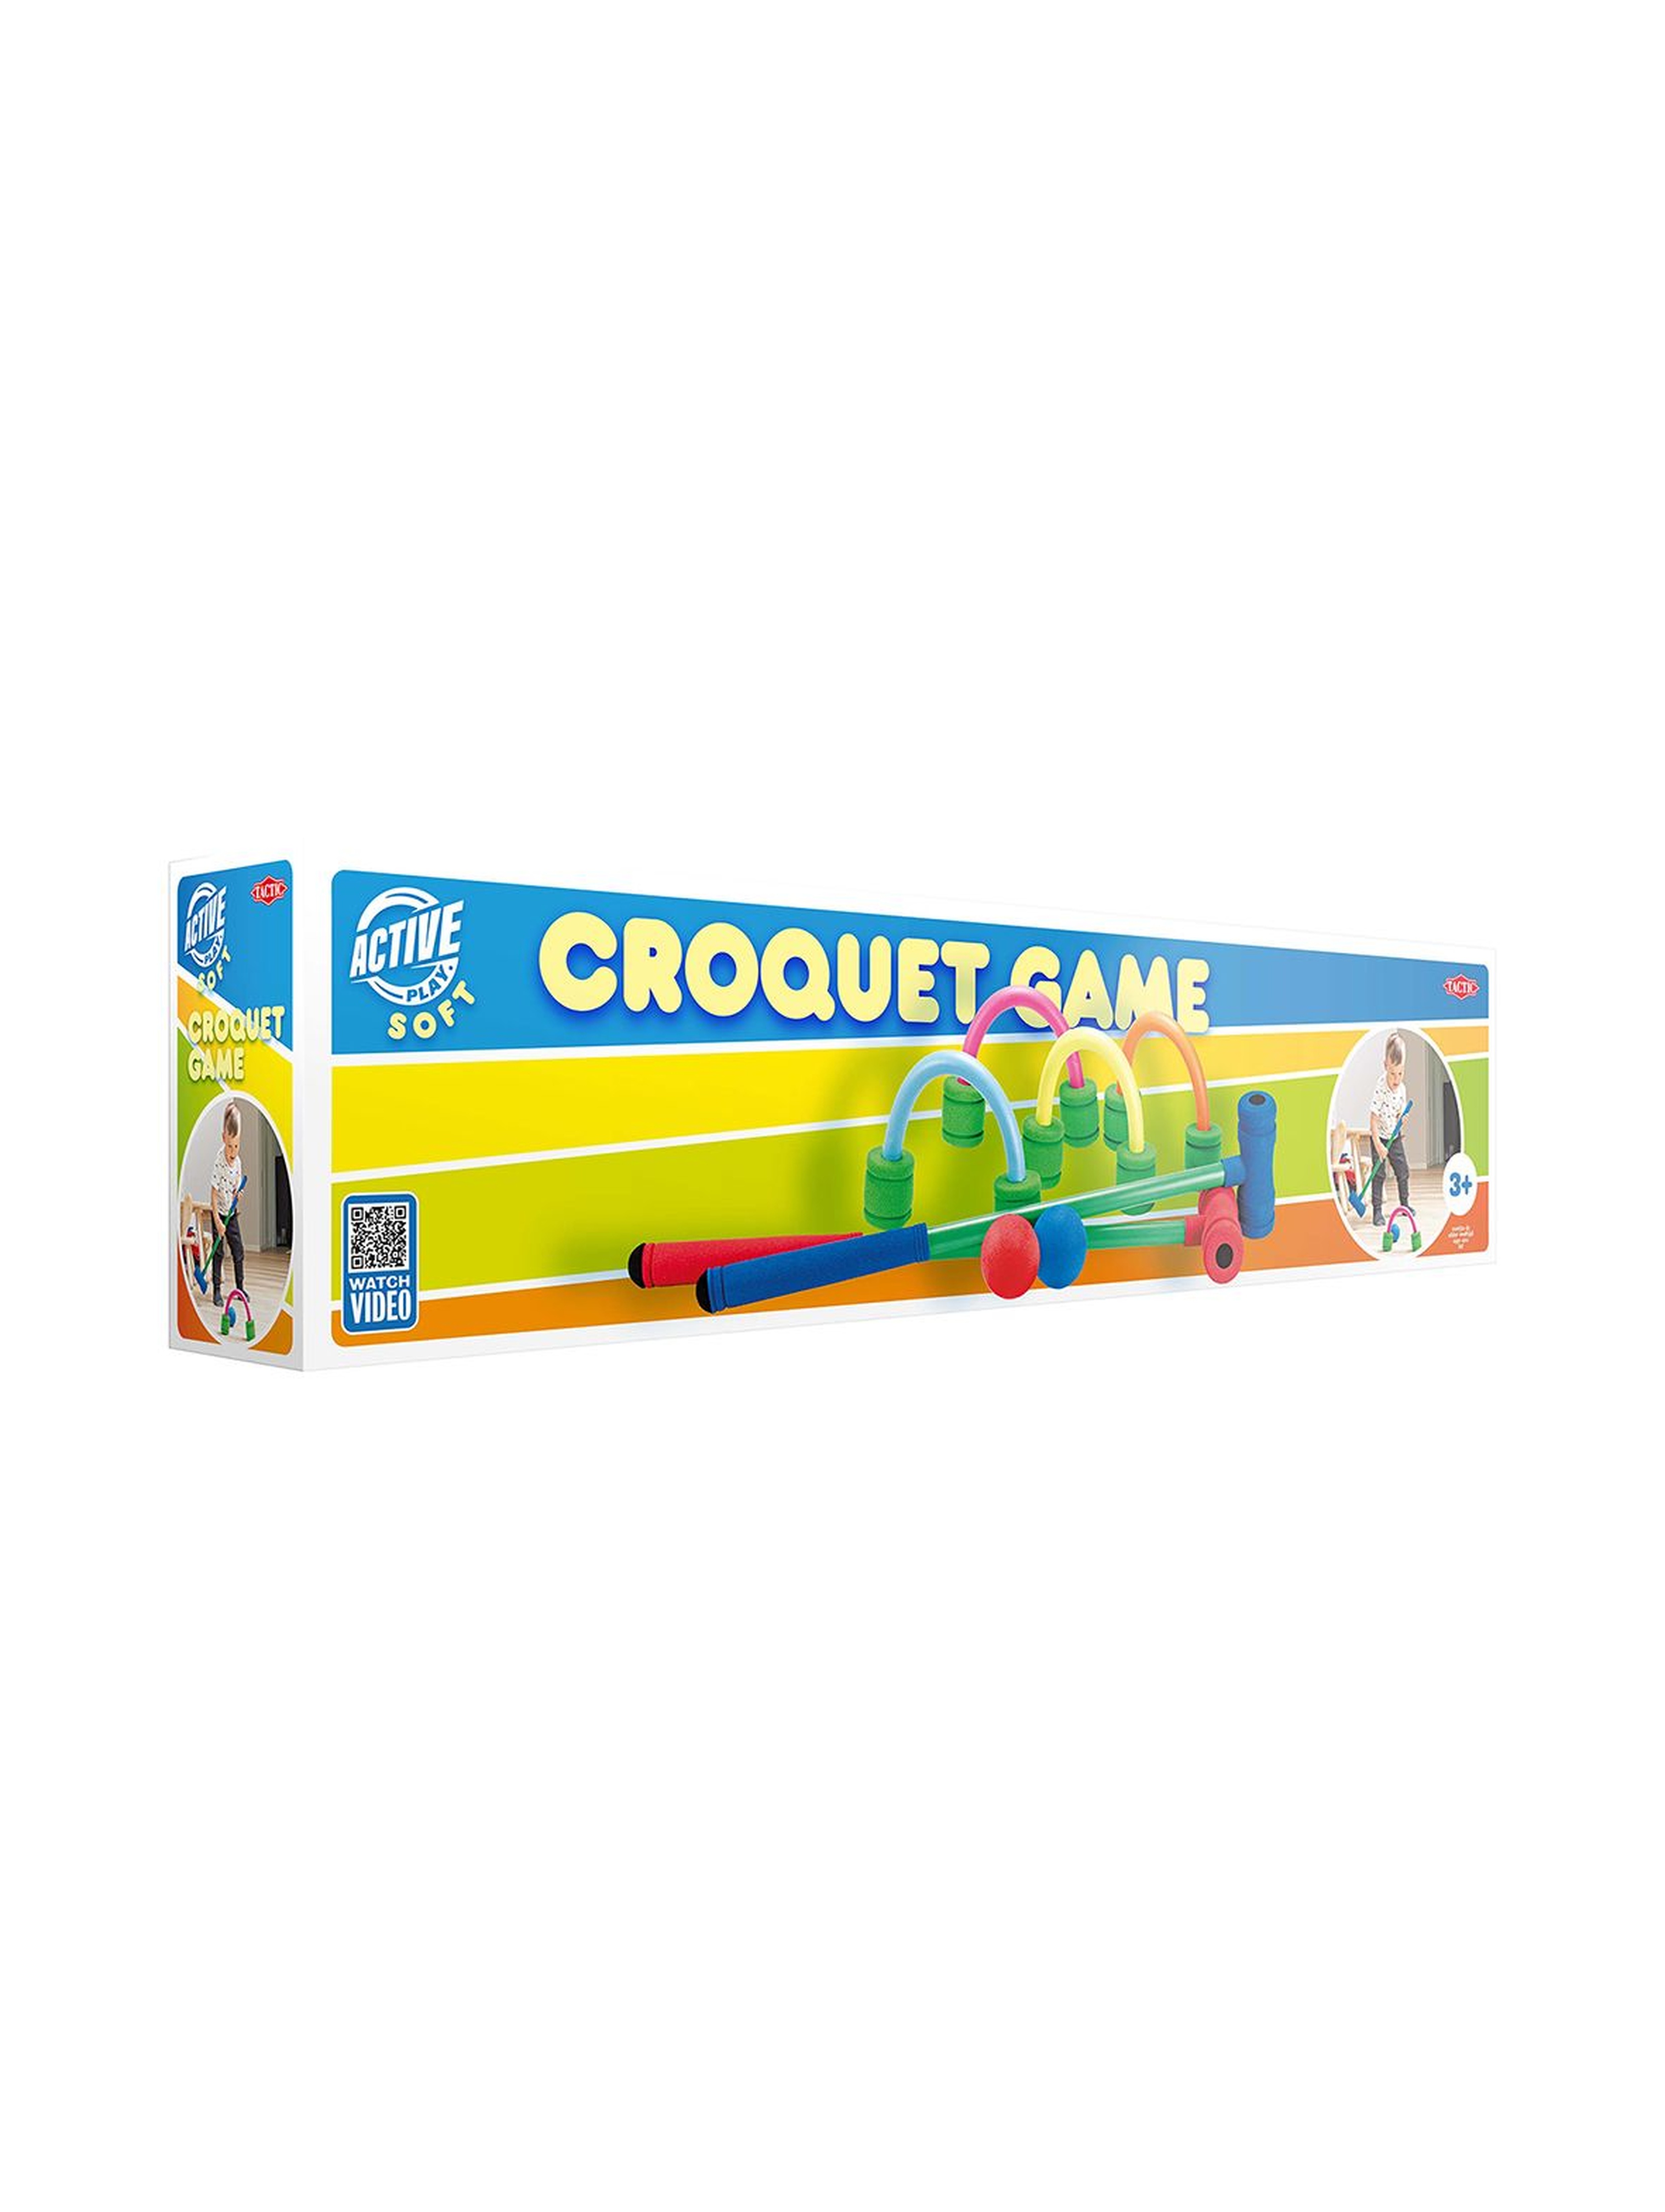 Gra plenerowa Miękki krokiet Soft Croquet Game 3+